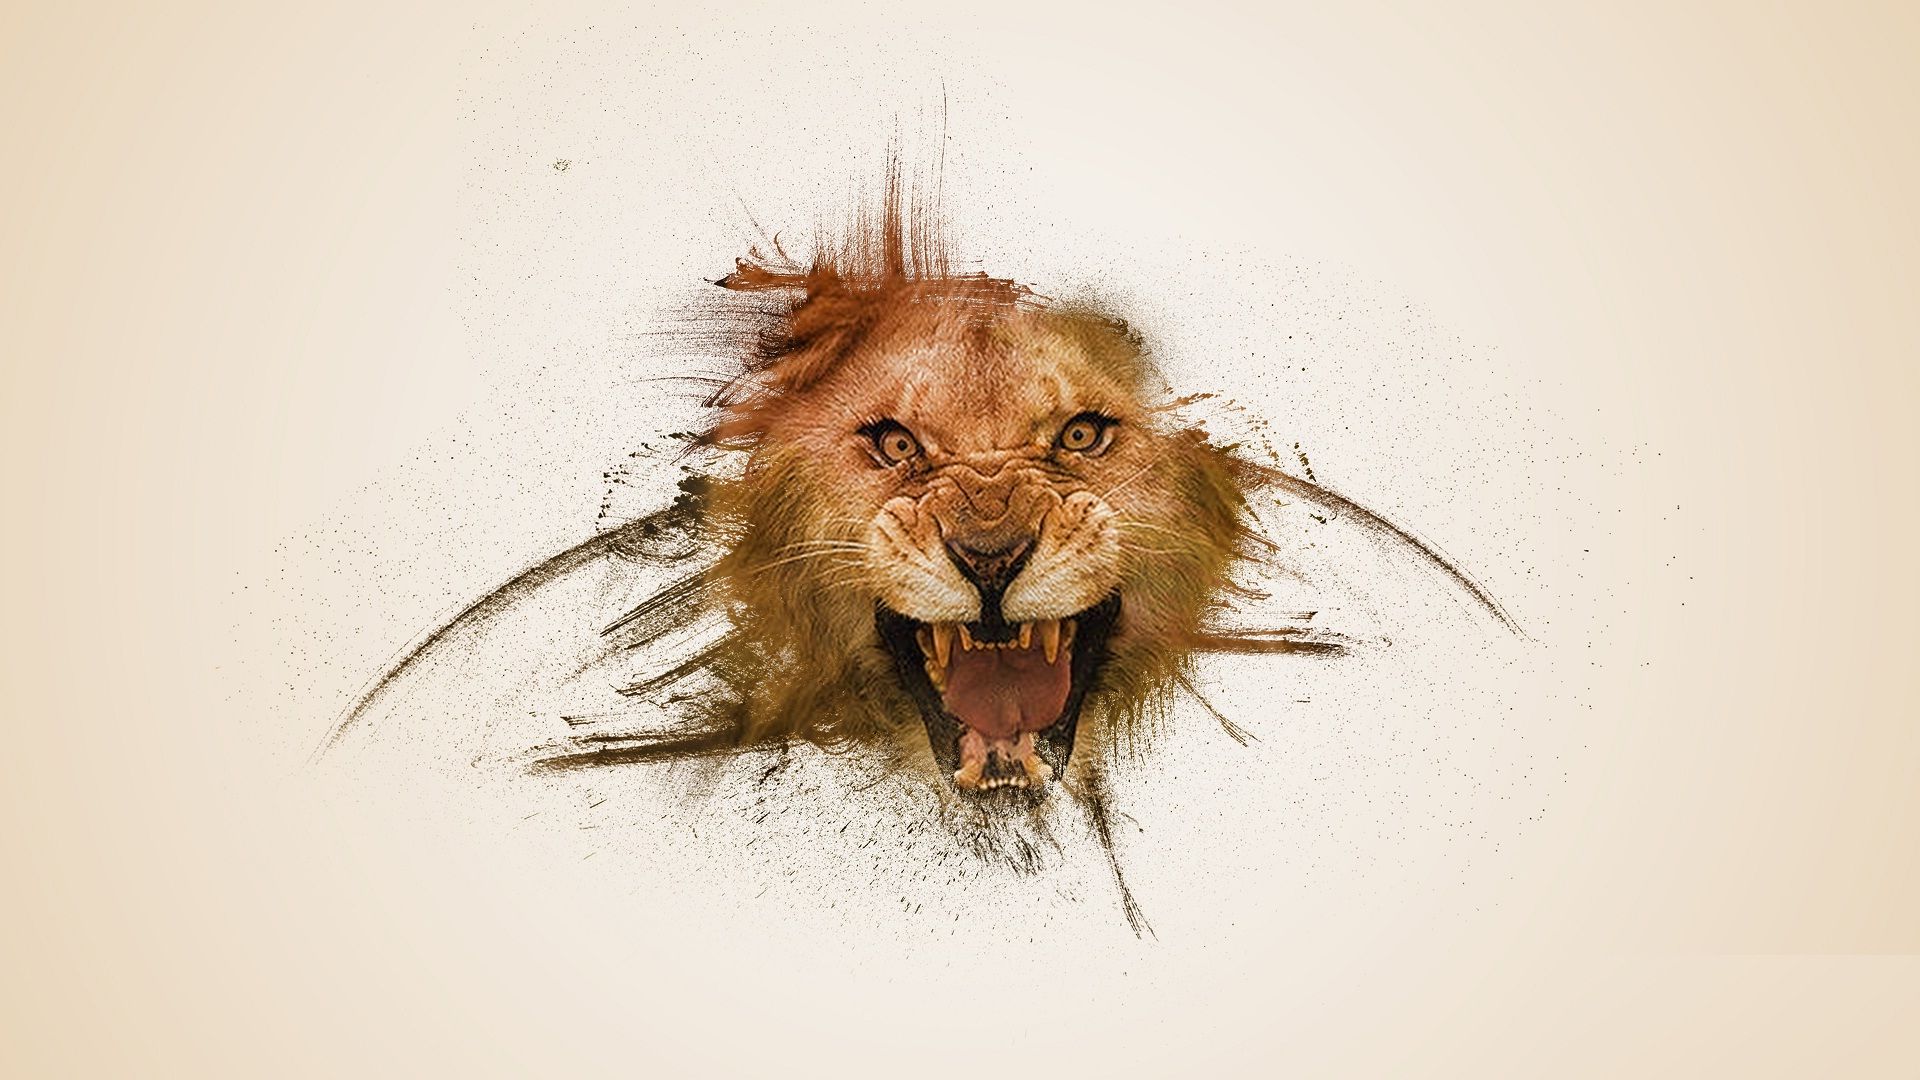 Lion Art Wallpaper - Animals Wallpaper For Samsung J7 - HD Wallpaper 